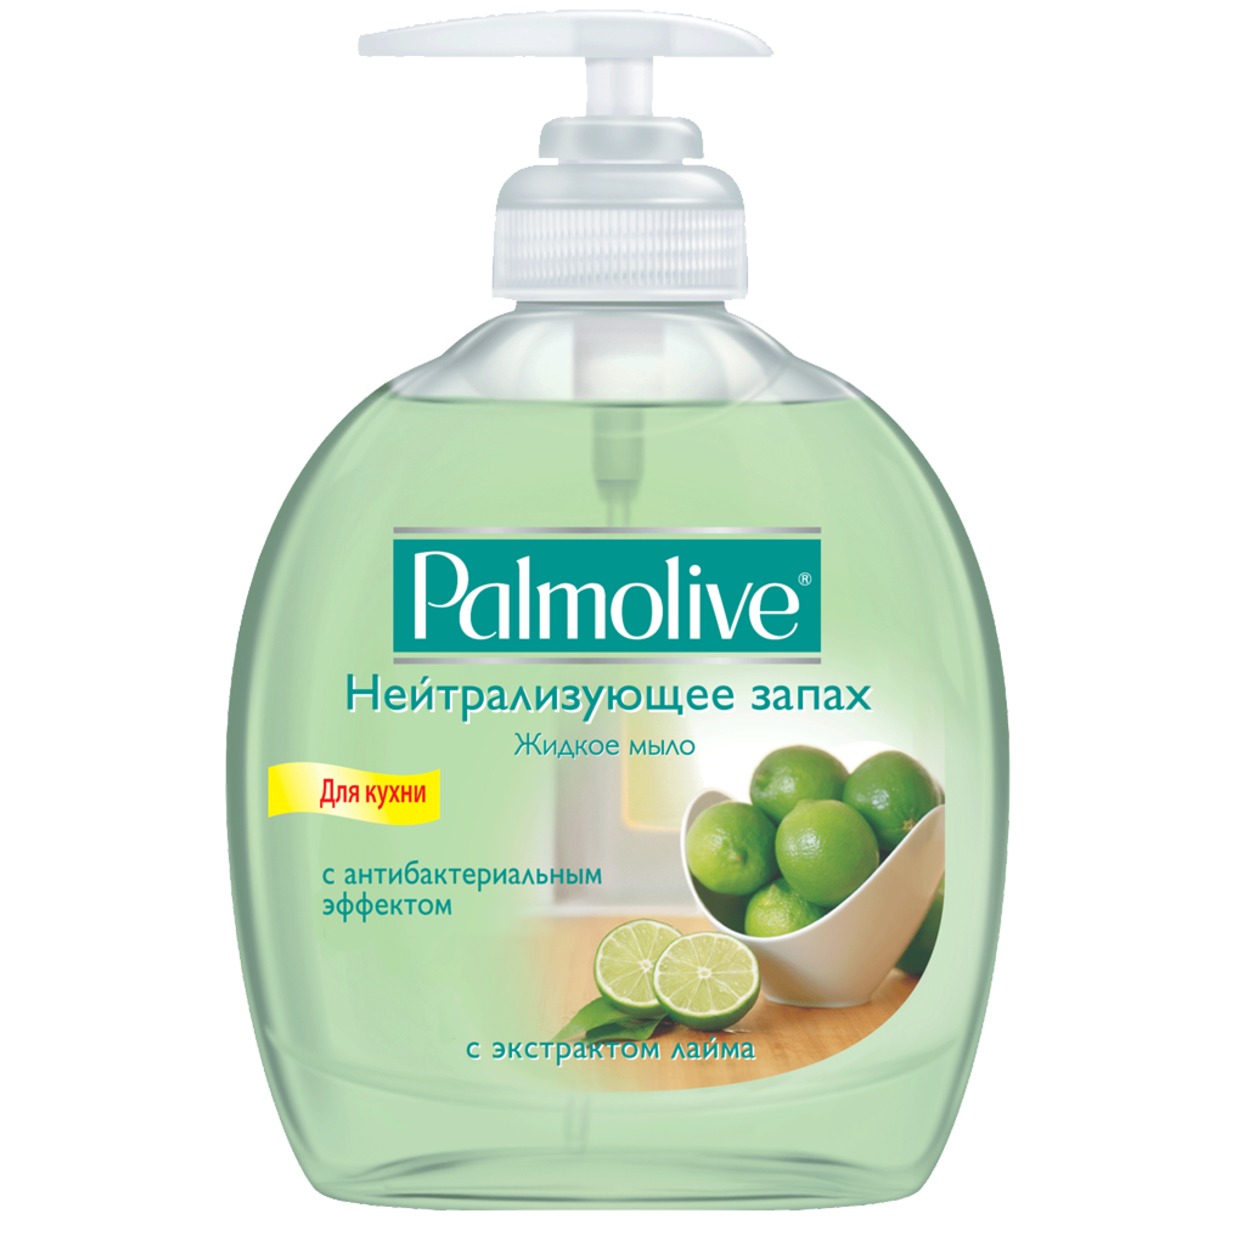 Мыло жидкое Palmolive Нейтрализующее запах с экстрактом лайма 300мл по акции в Пятерочке